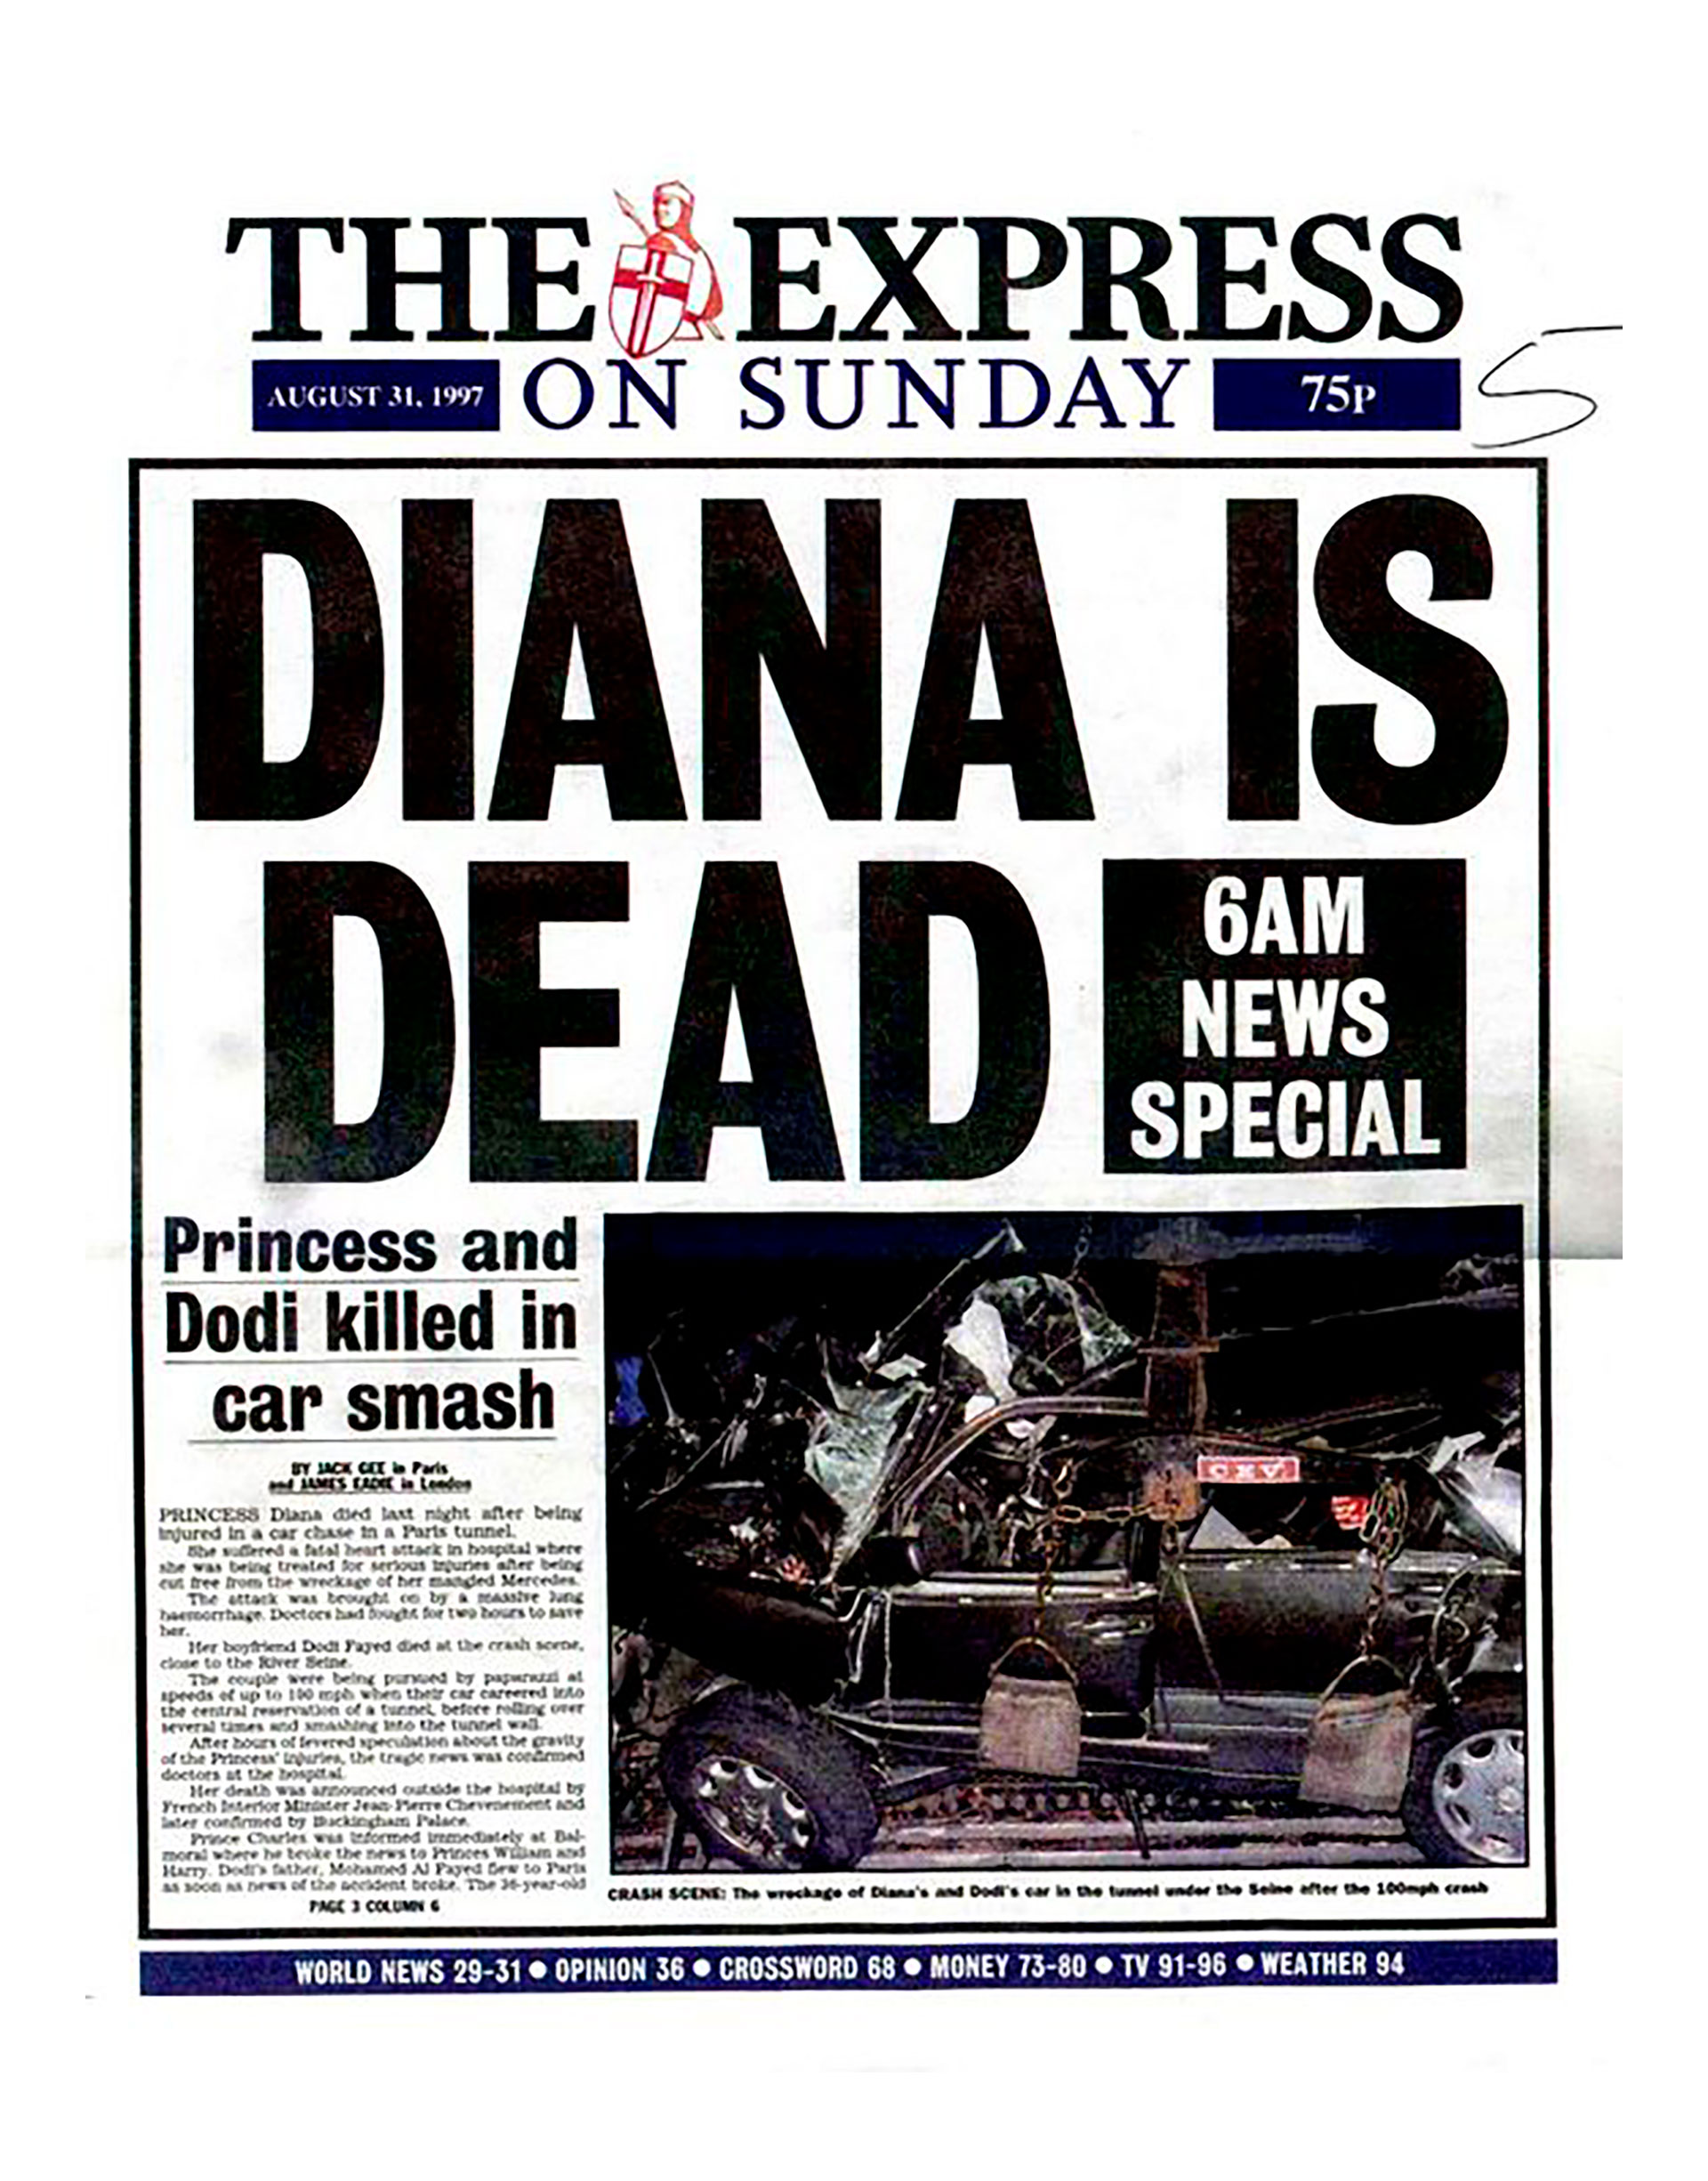 La hora oficial de la muerte de Lady Di fue las 4.05. En minutos, la noticia dio la vuelta al mundo